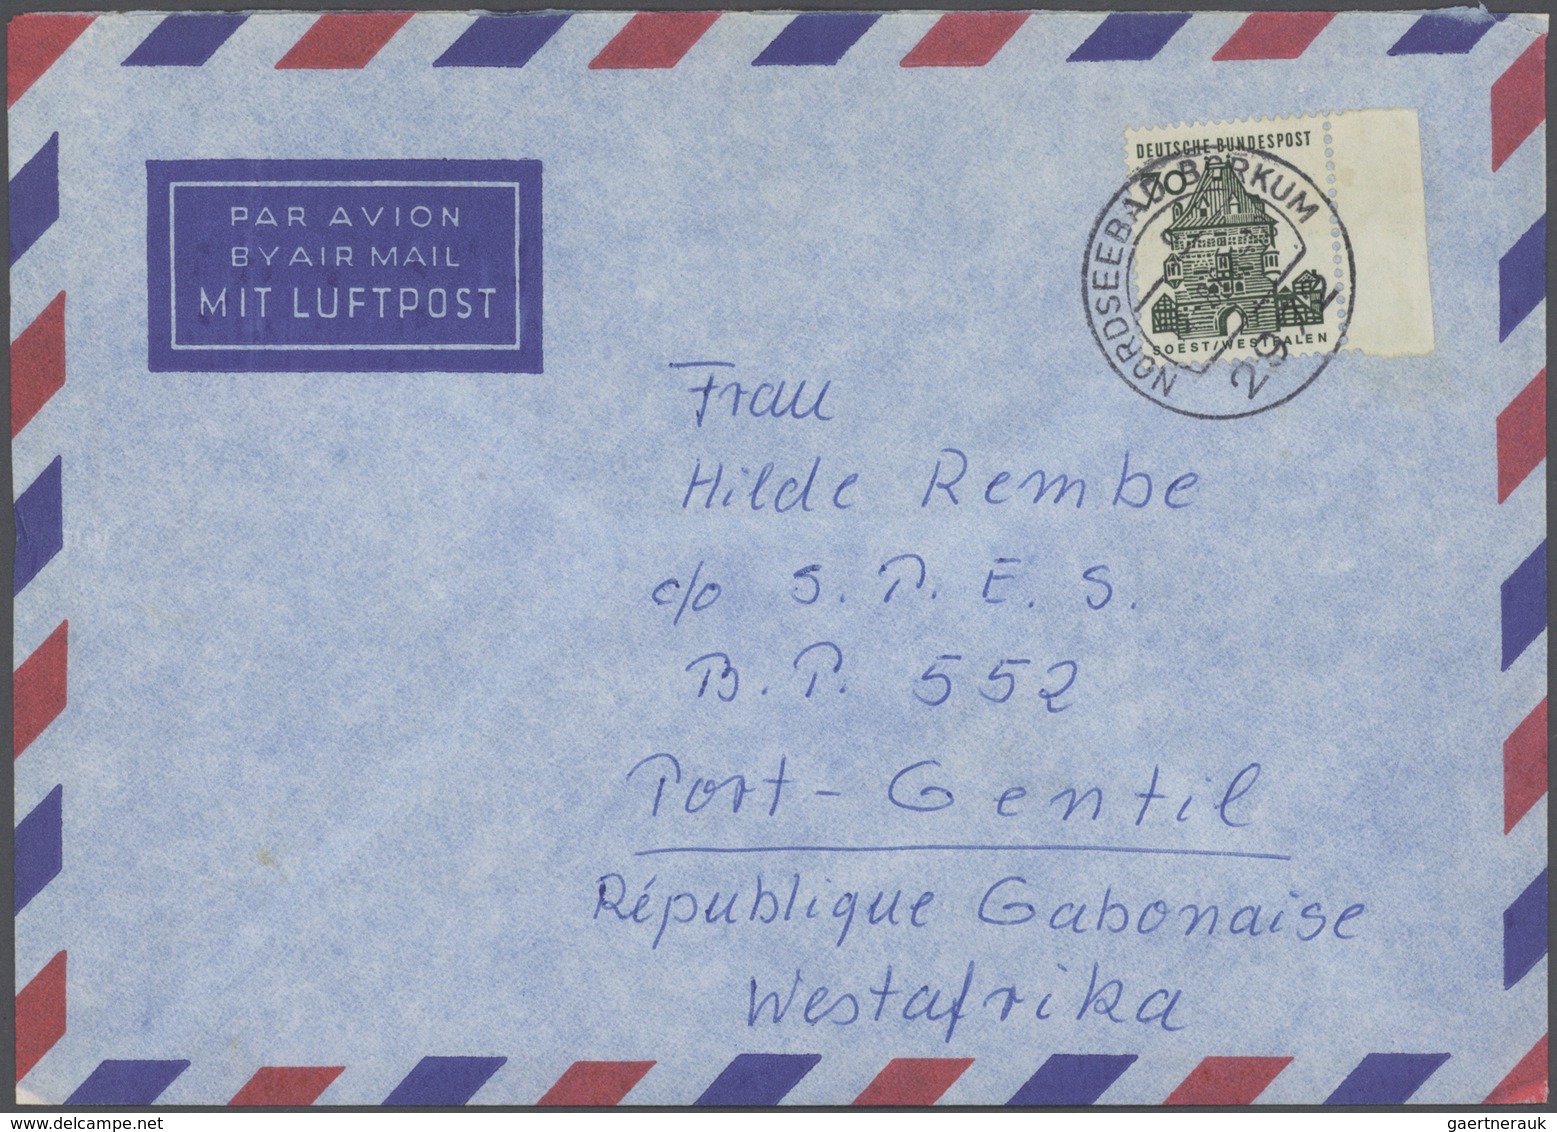 Bundesrepublik Deutschland: 1965/2005, DAUERSERIEN, vielseitiger Posten von ca. 740 Briefen und Kart